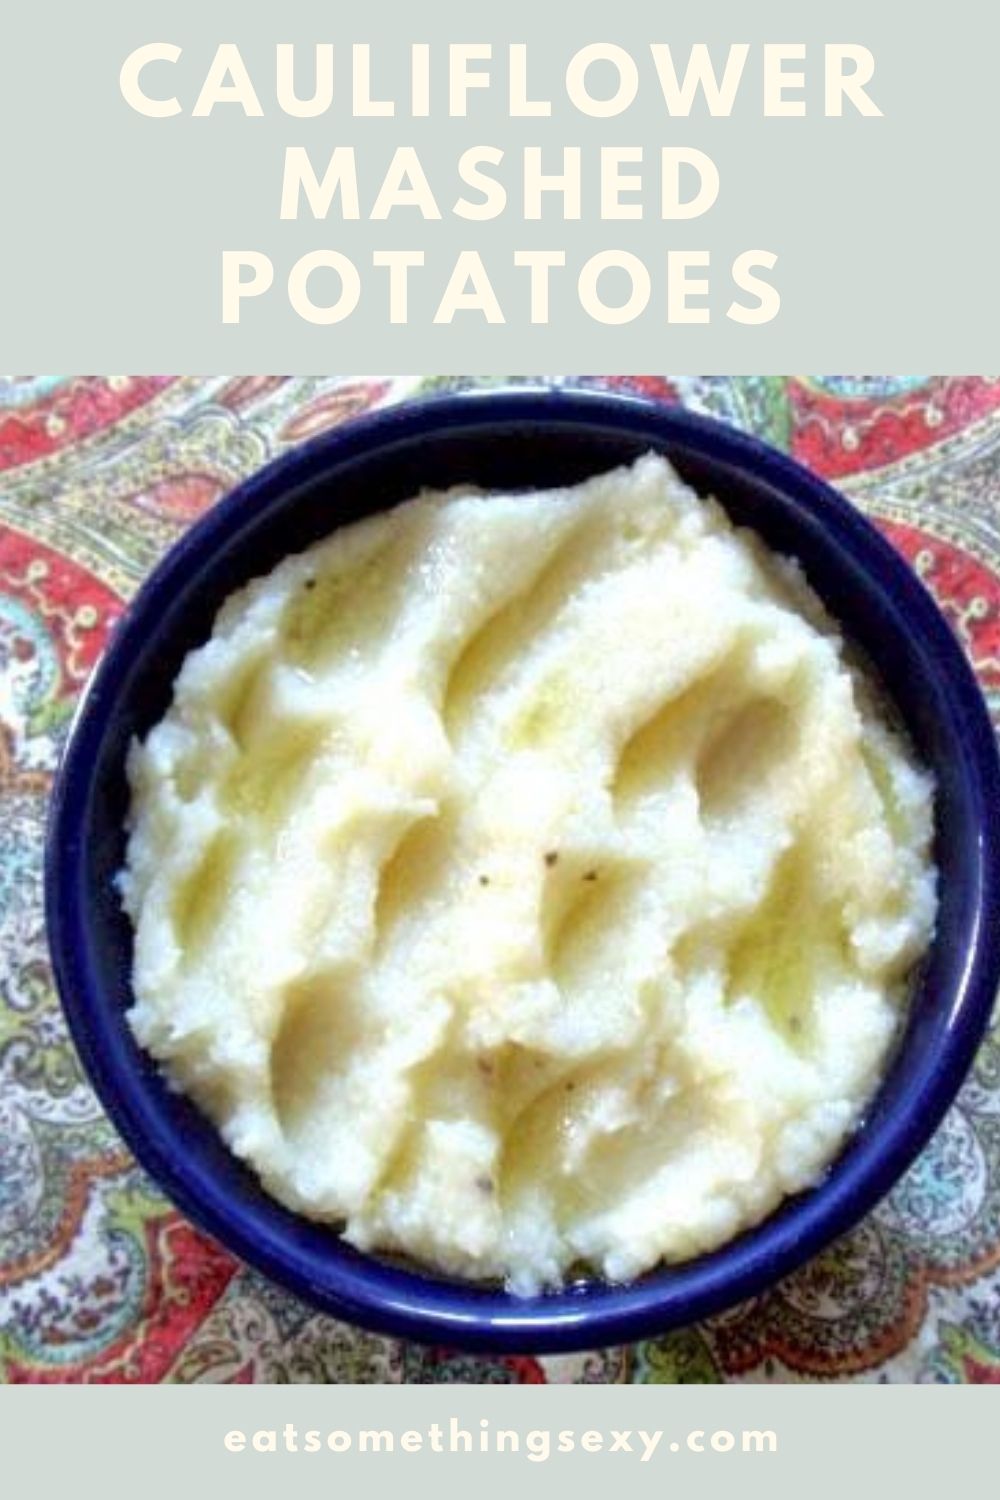 cauliflower mashed potatoes recipe graphic